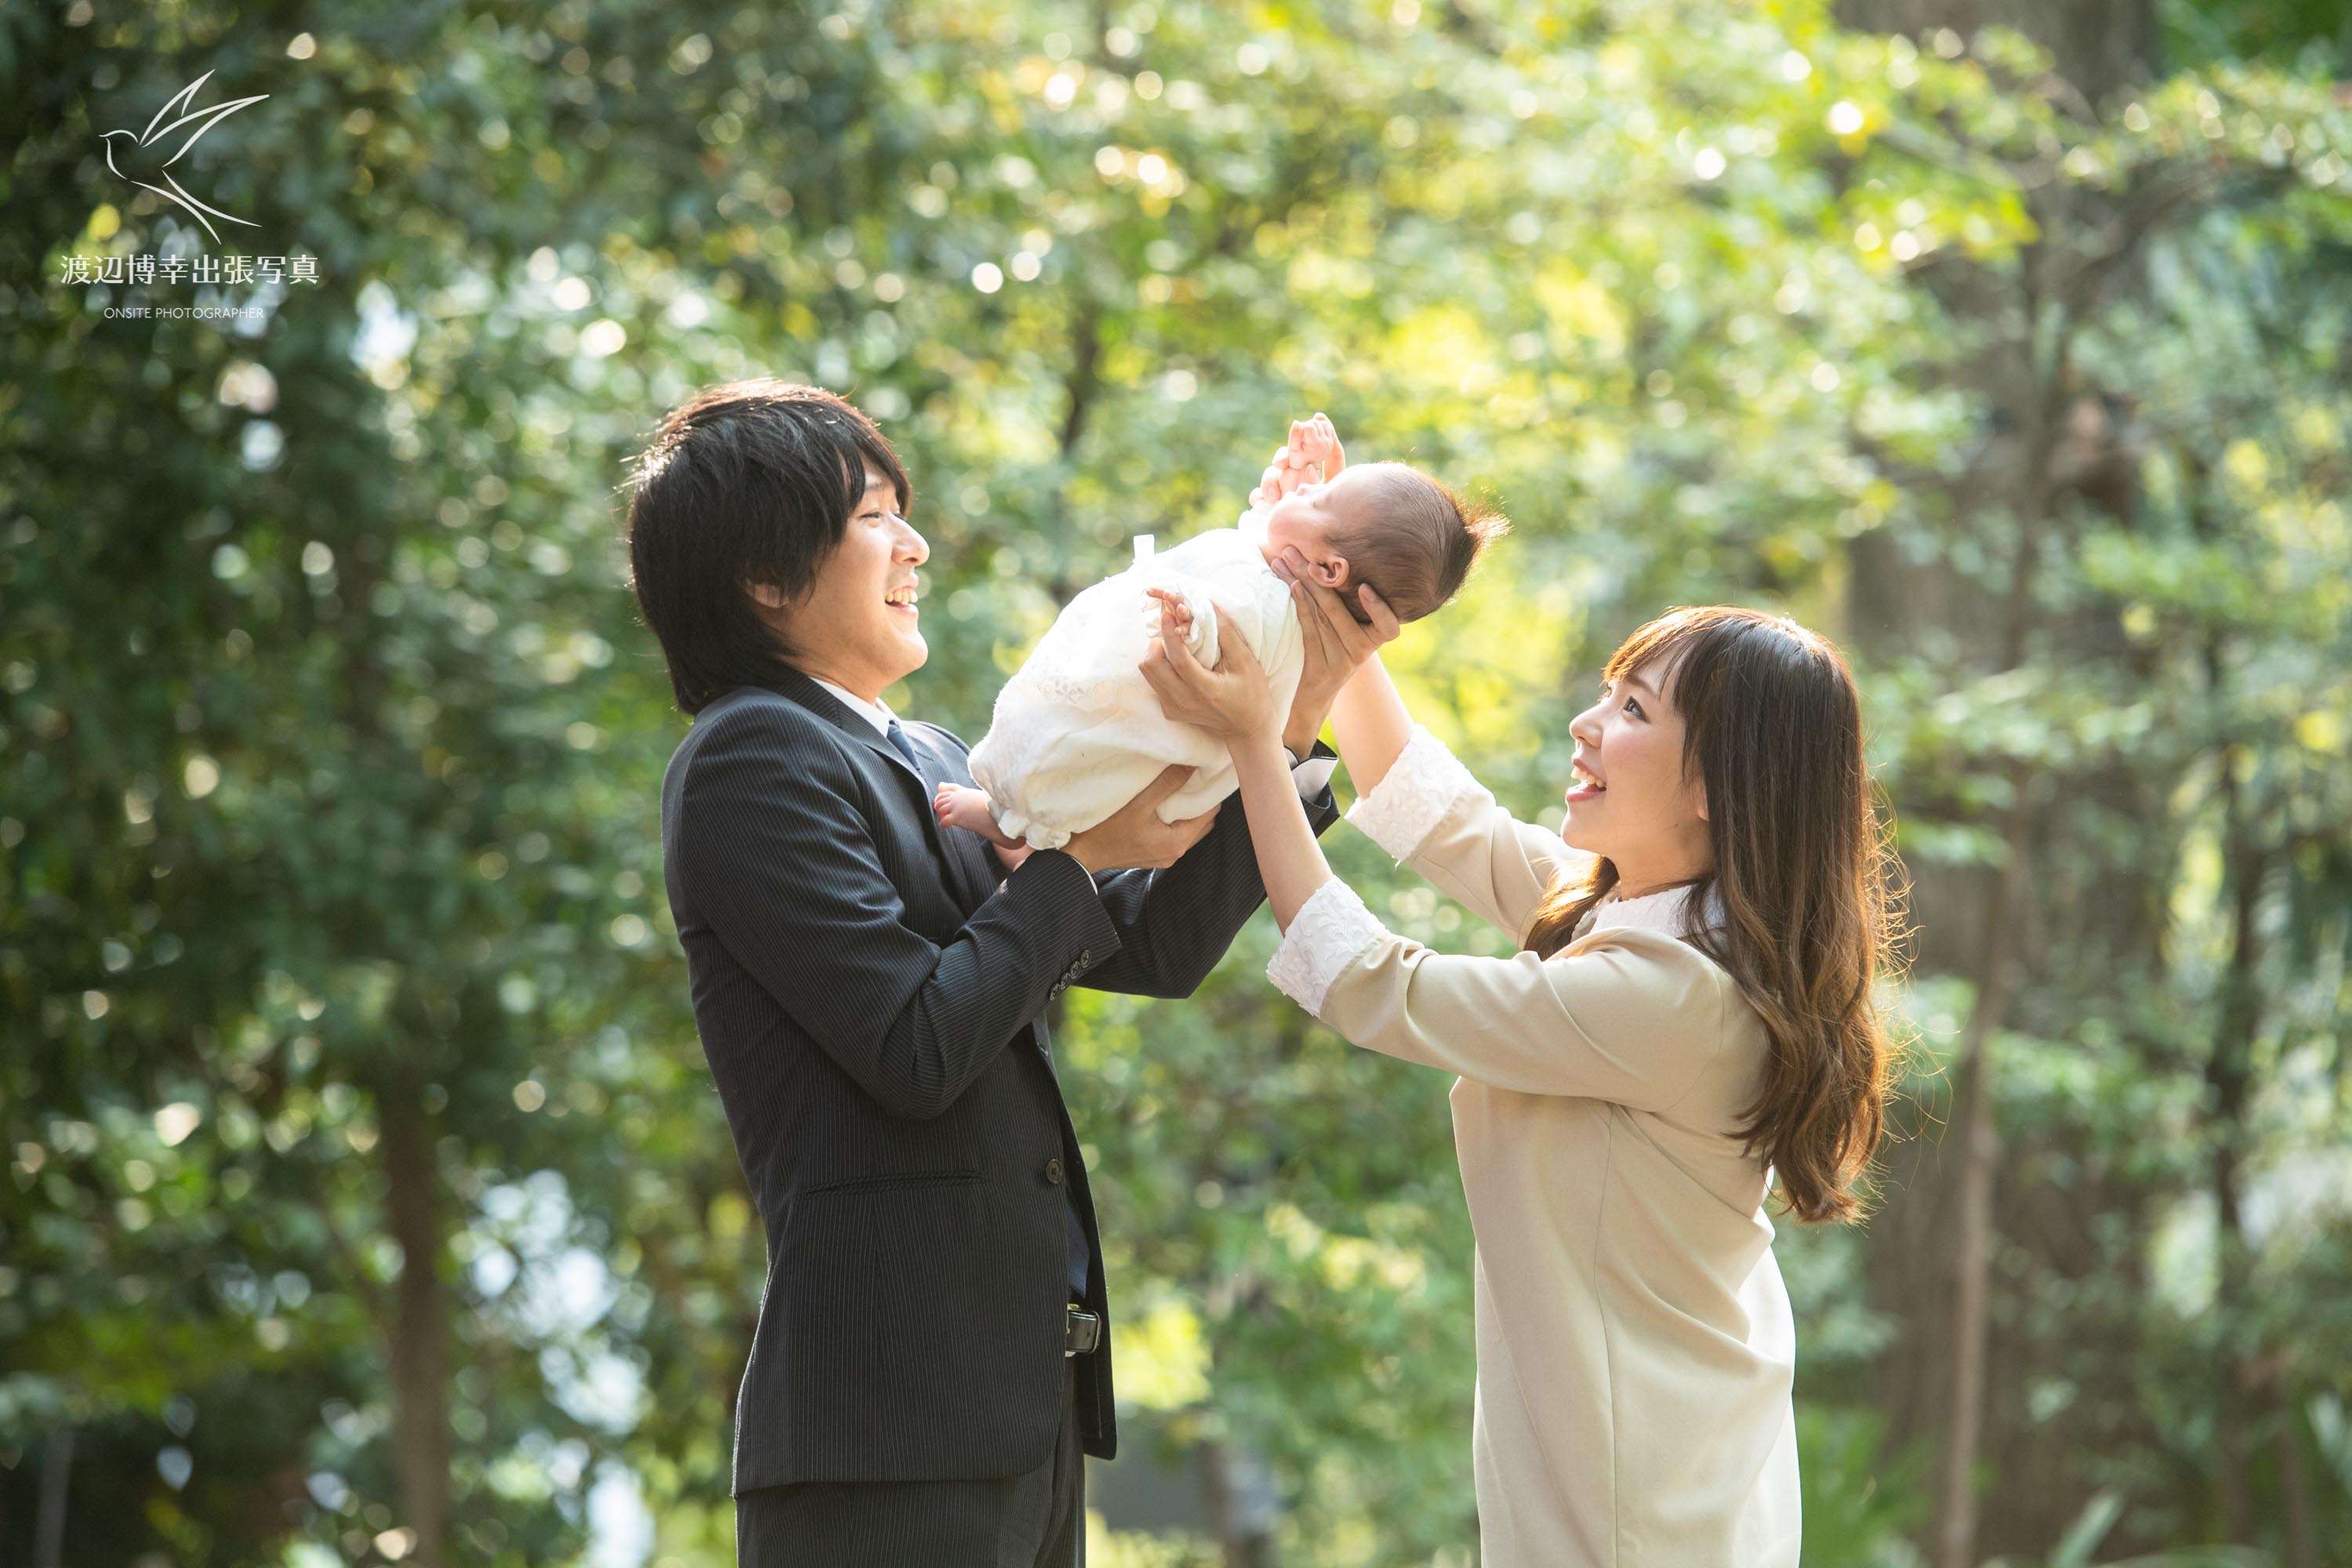 赤坂の日枝神社でお宮参りの掛着を着て赤ちゃんを抱く夫婦の写真